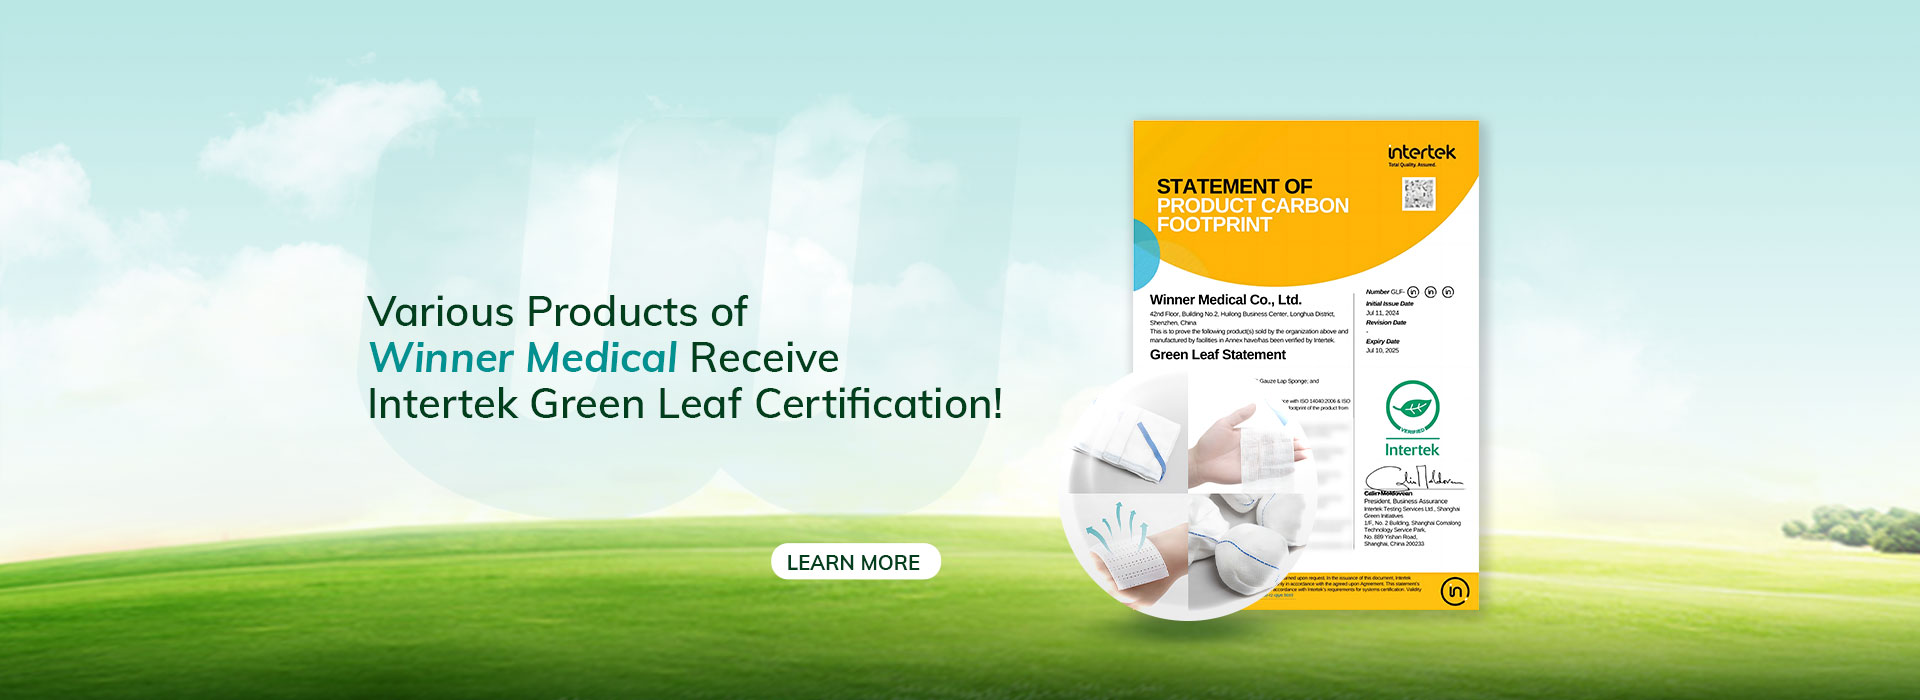 أخبار! المنتجات الطبية المختلفة الفائزة تحصل على شهادة أوراق خضراء!